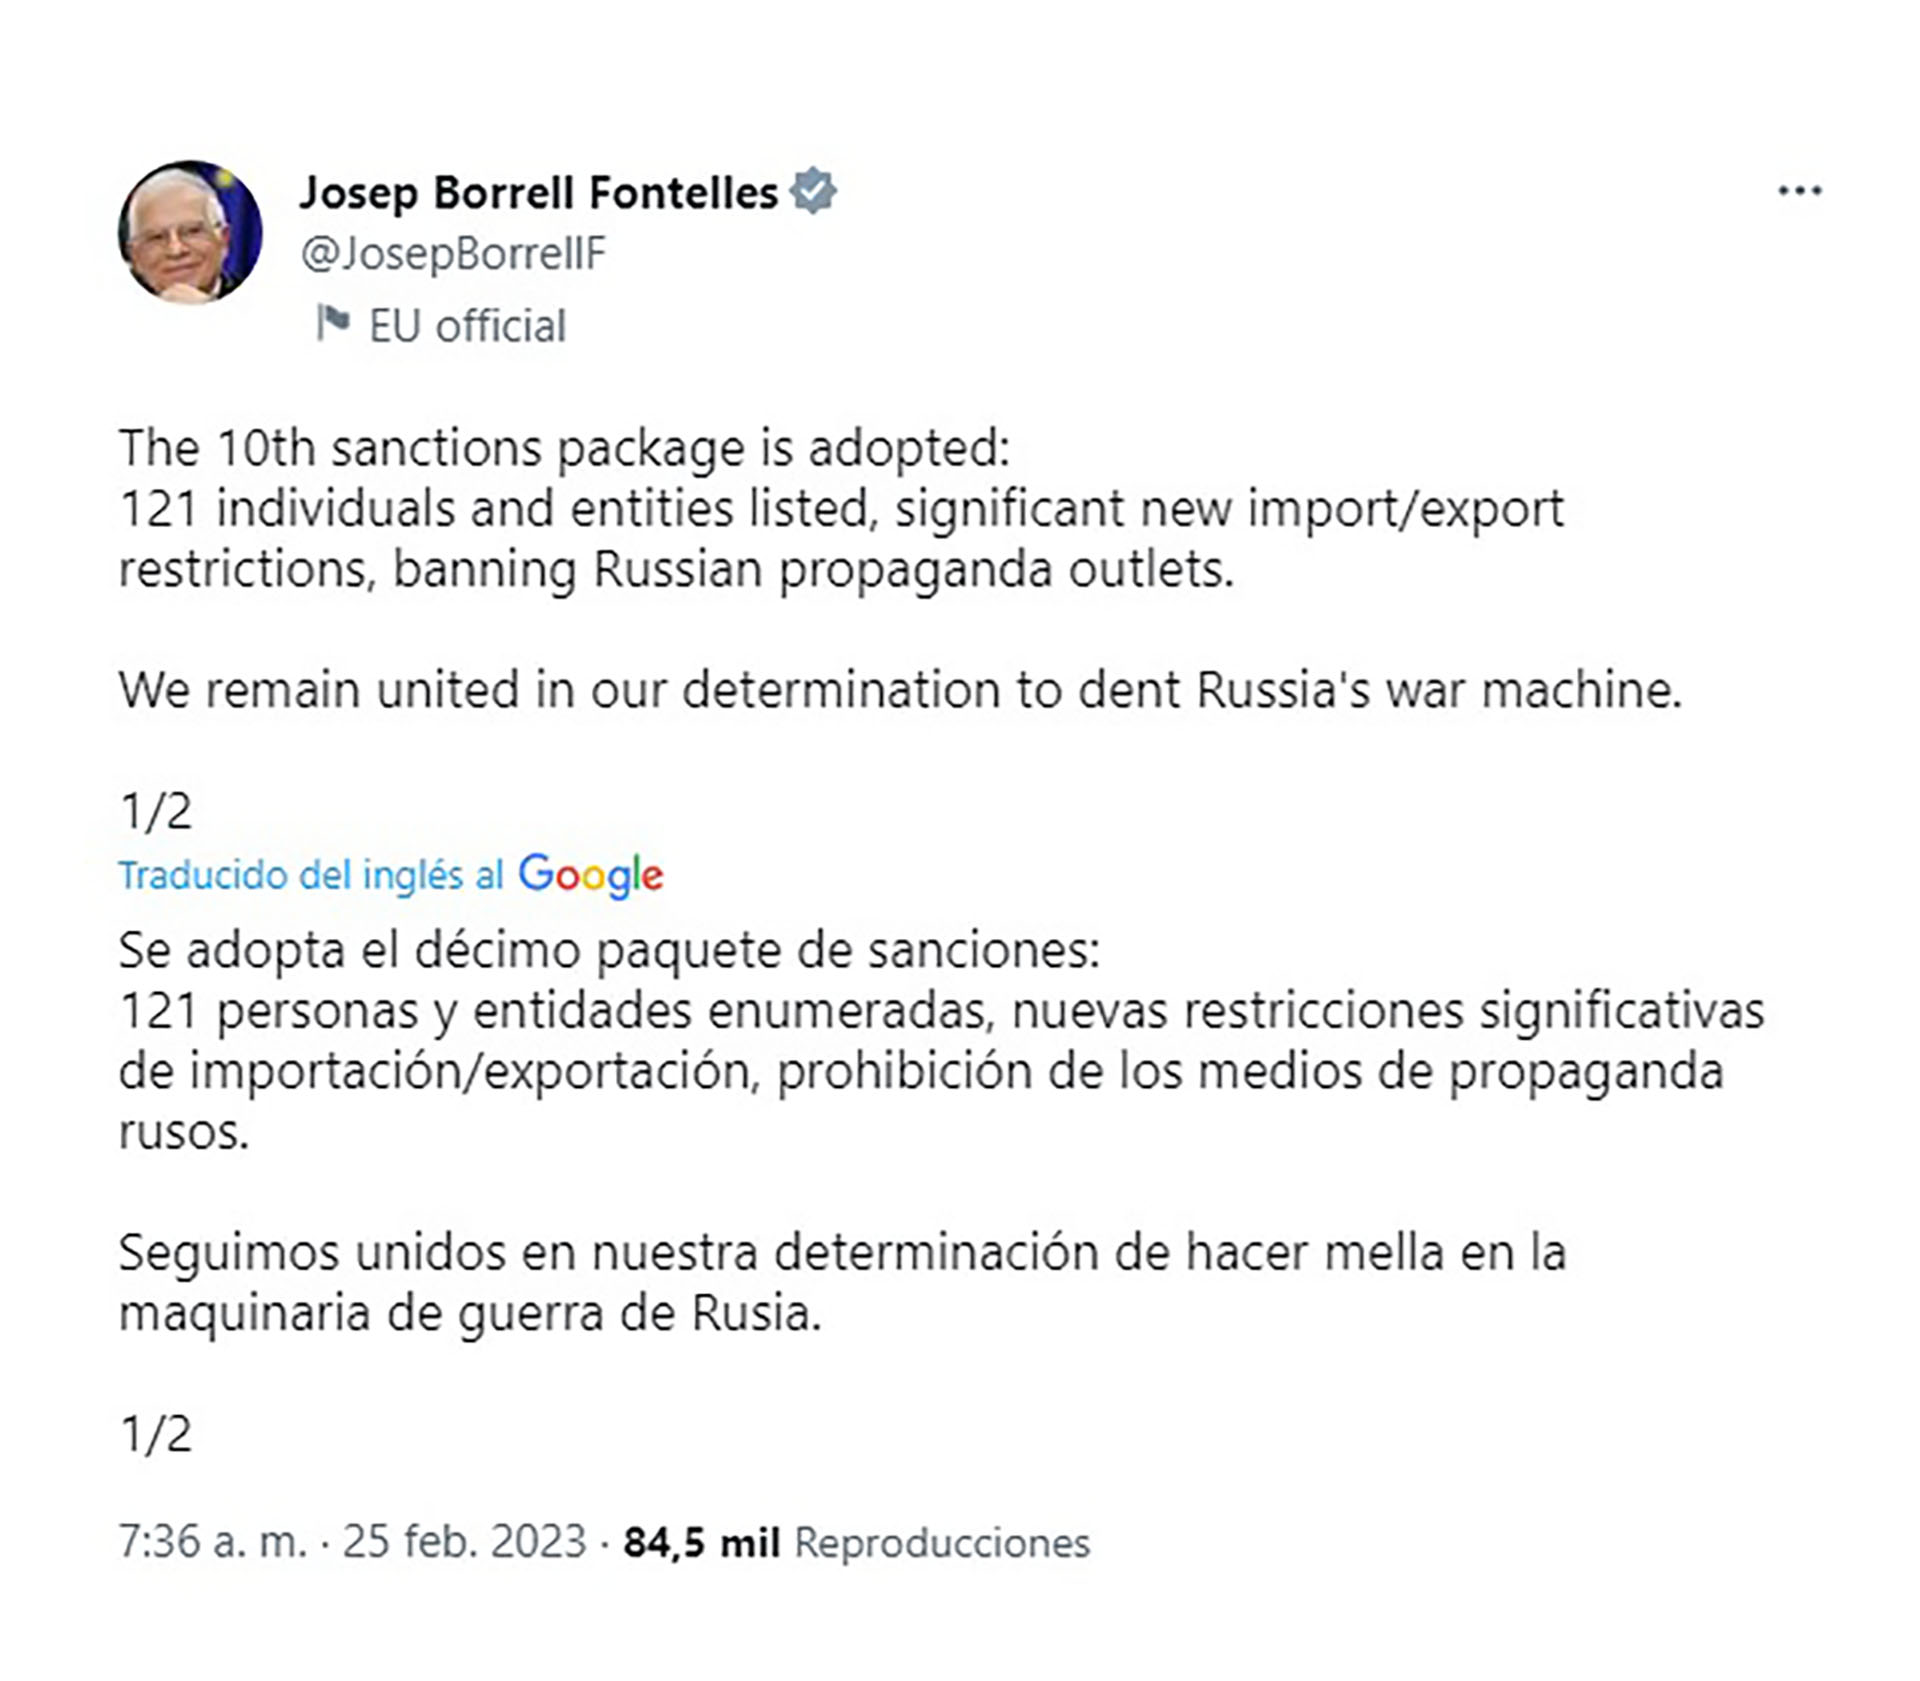 El mensaje de Josep Borrell